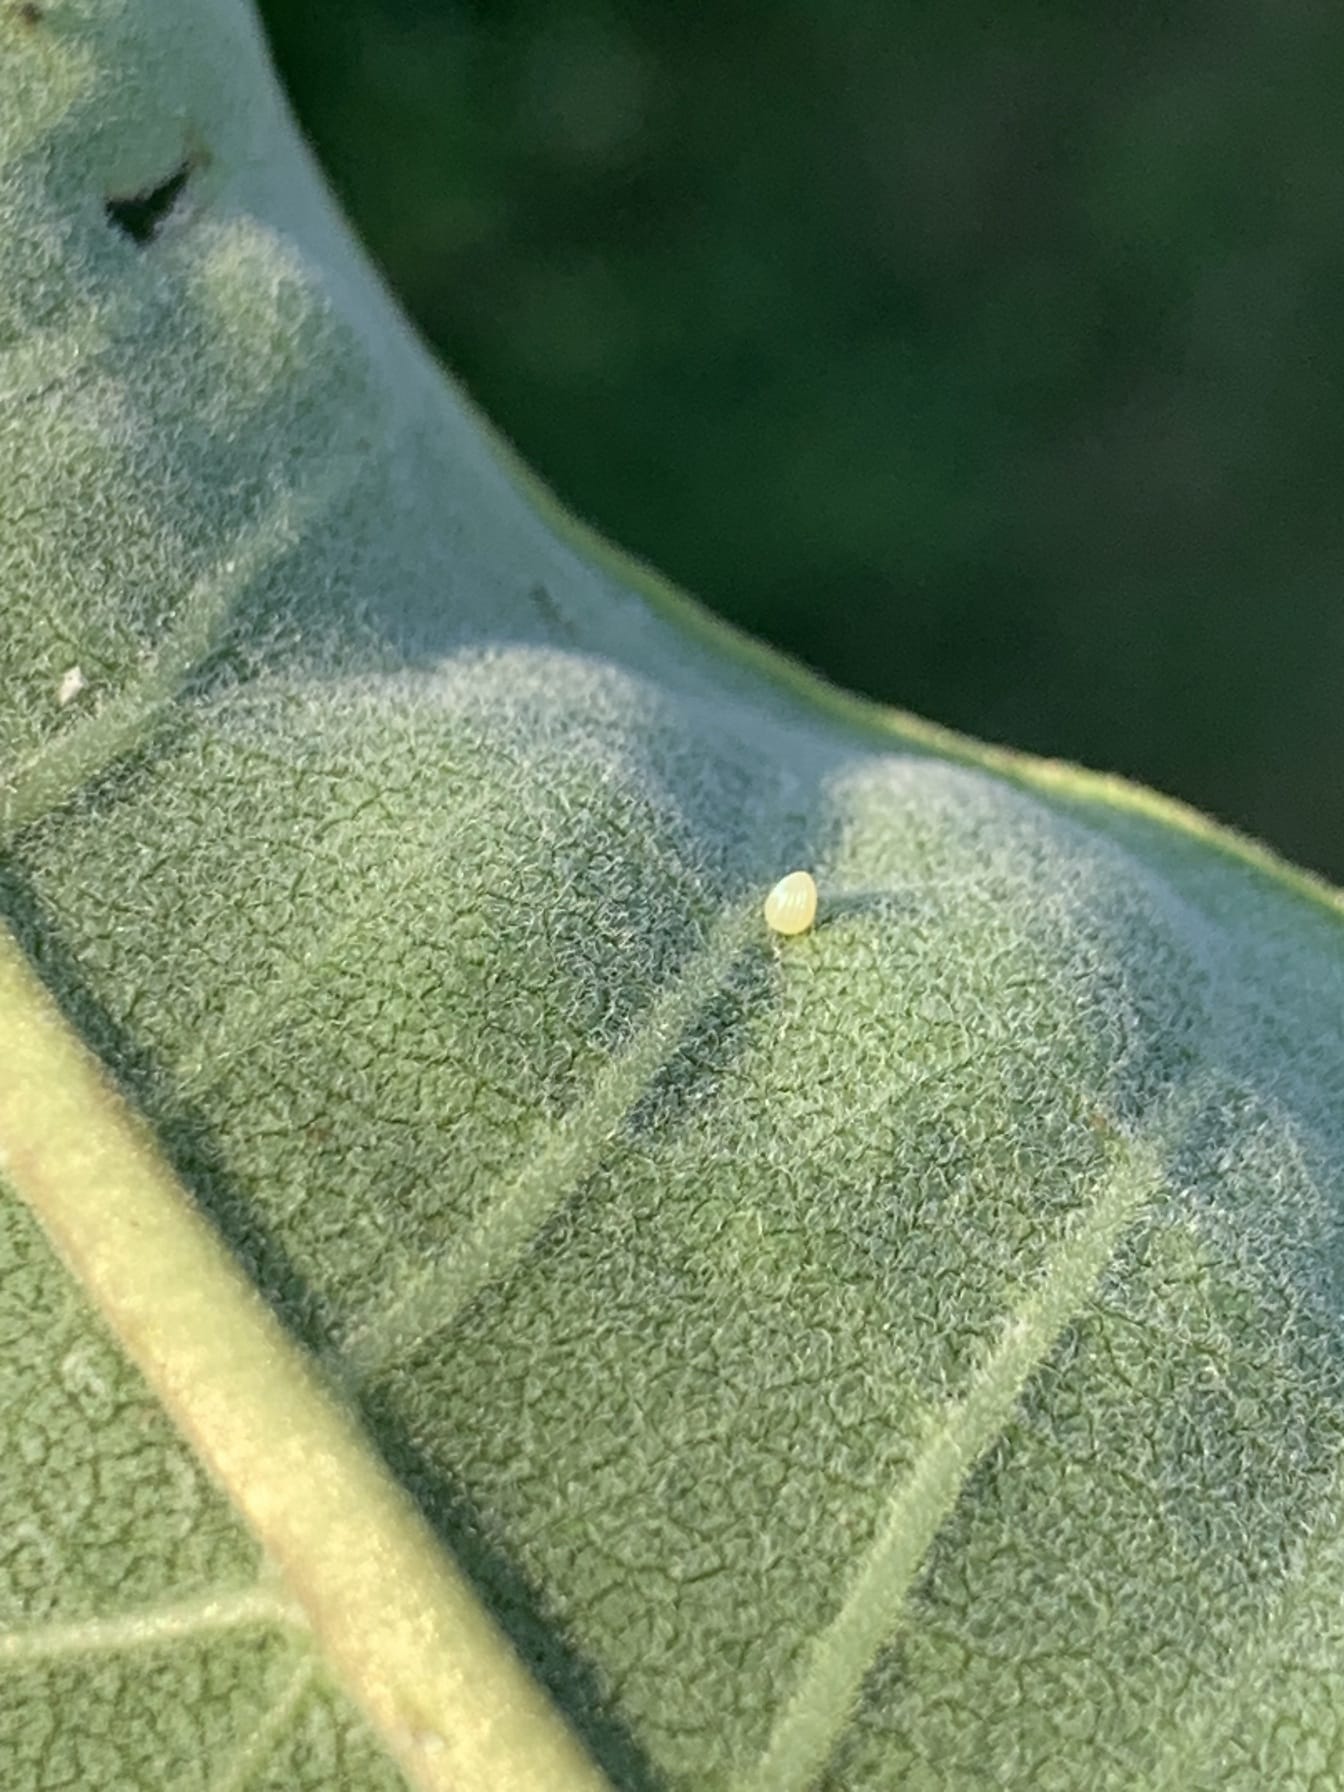 Vajíčko motýla monarchy stěhovavého na zadní straně listu mléčnice velmi malý žlutý kuželovitý tvar